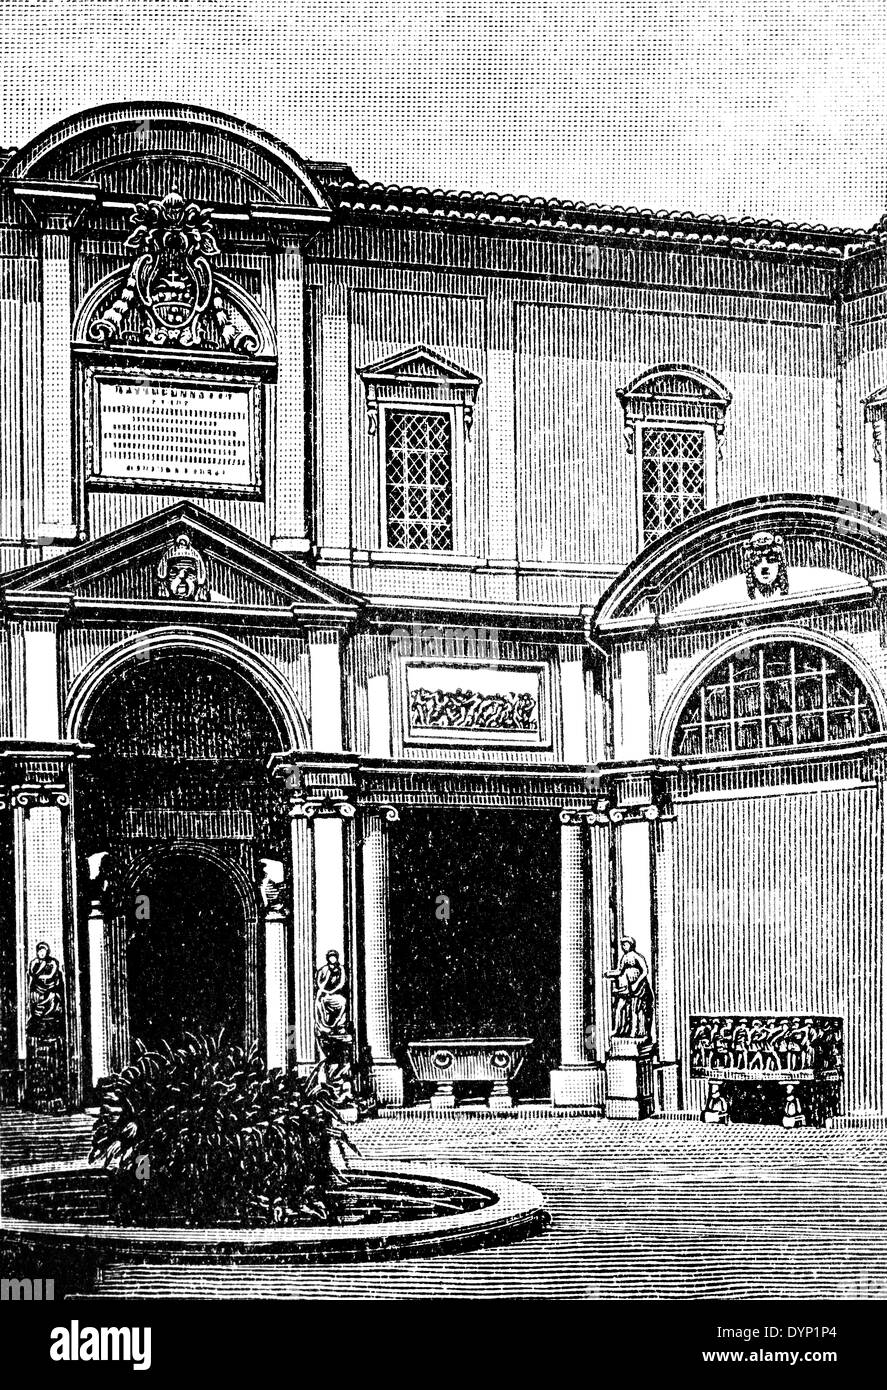 Cortile del Belvedere (cour du Belvédère), Cité du Vatican, Rome, Italie, illustration de l'Encyclopédie Soviétique, 1928 Banque D'Images